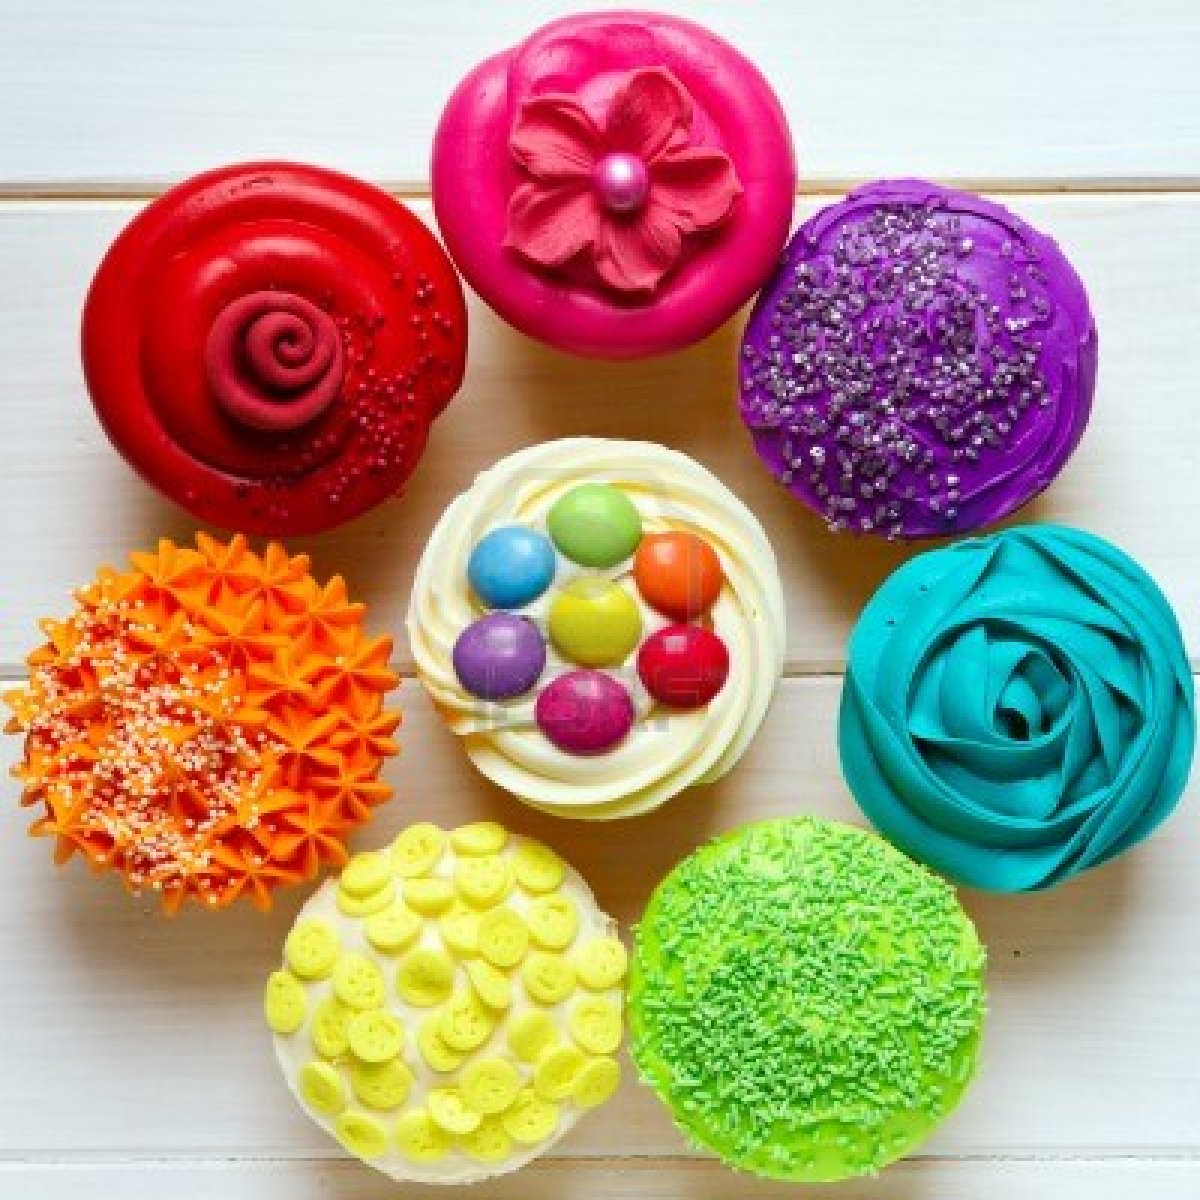 cupcakes versieren 5 juni 2013